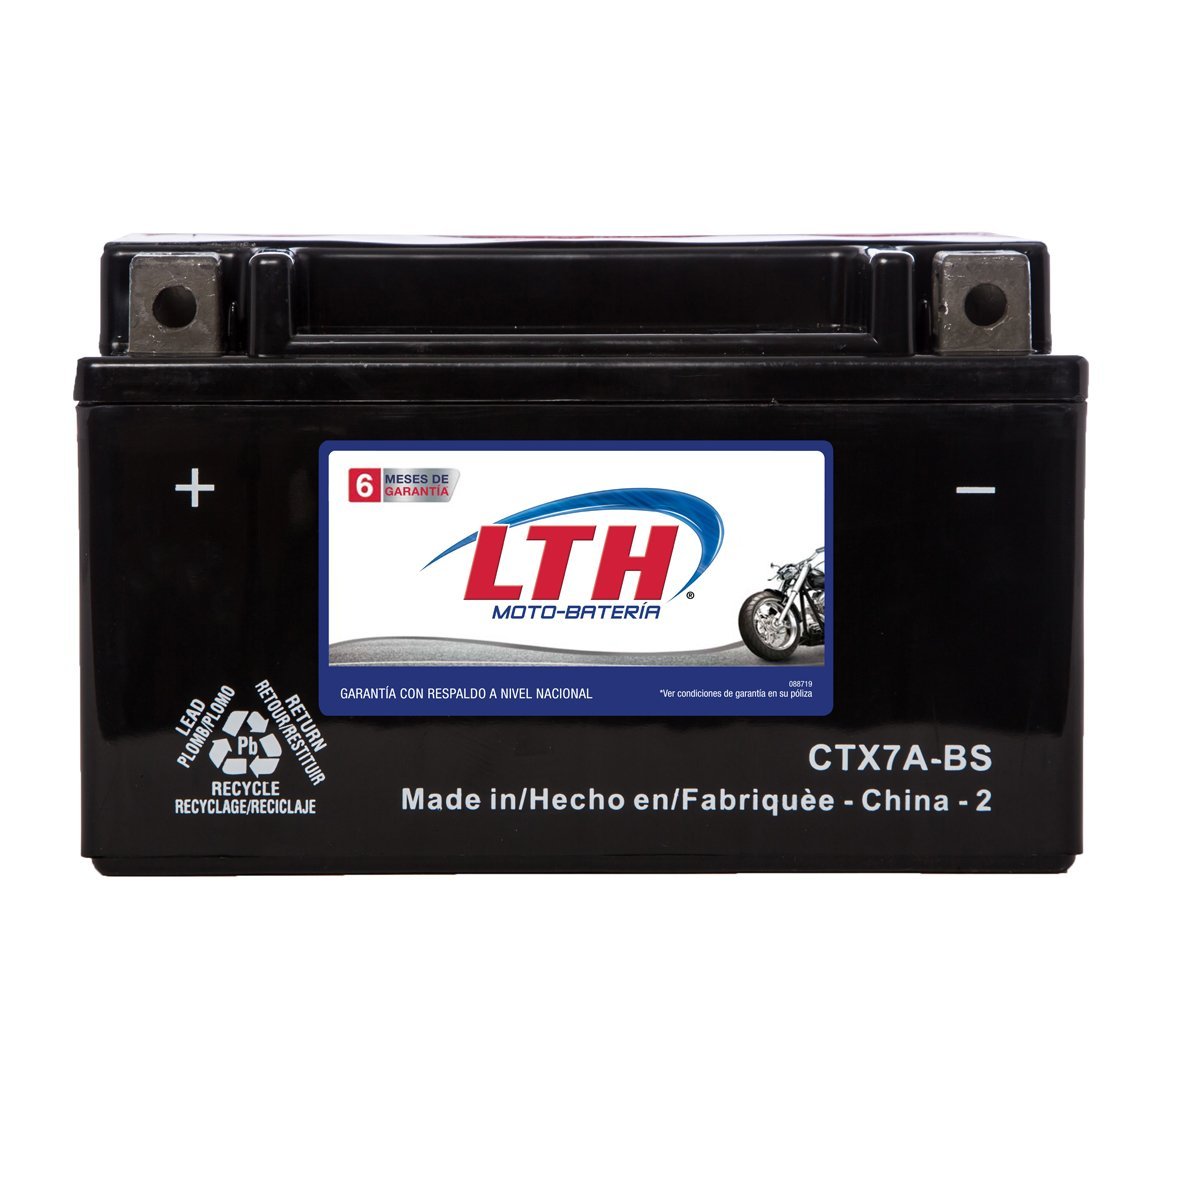 Moto Bater&iacute;a Lth Ctx7Abs